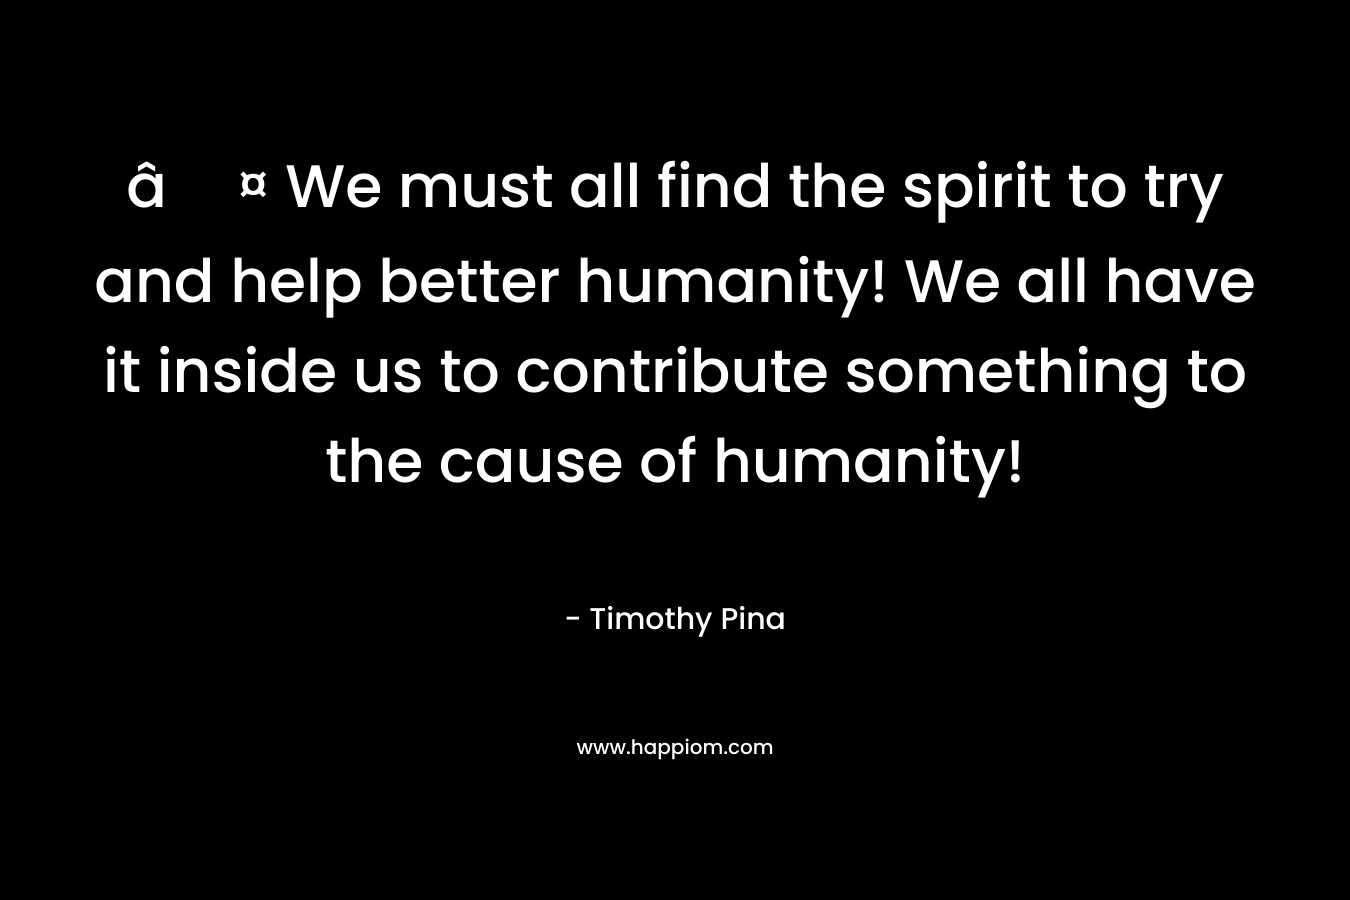 â¤ We must all find the spirit to try and help better humanity! We all have it inside us to contribute something to the cause of humanity!